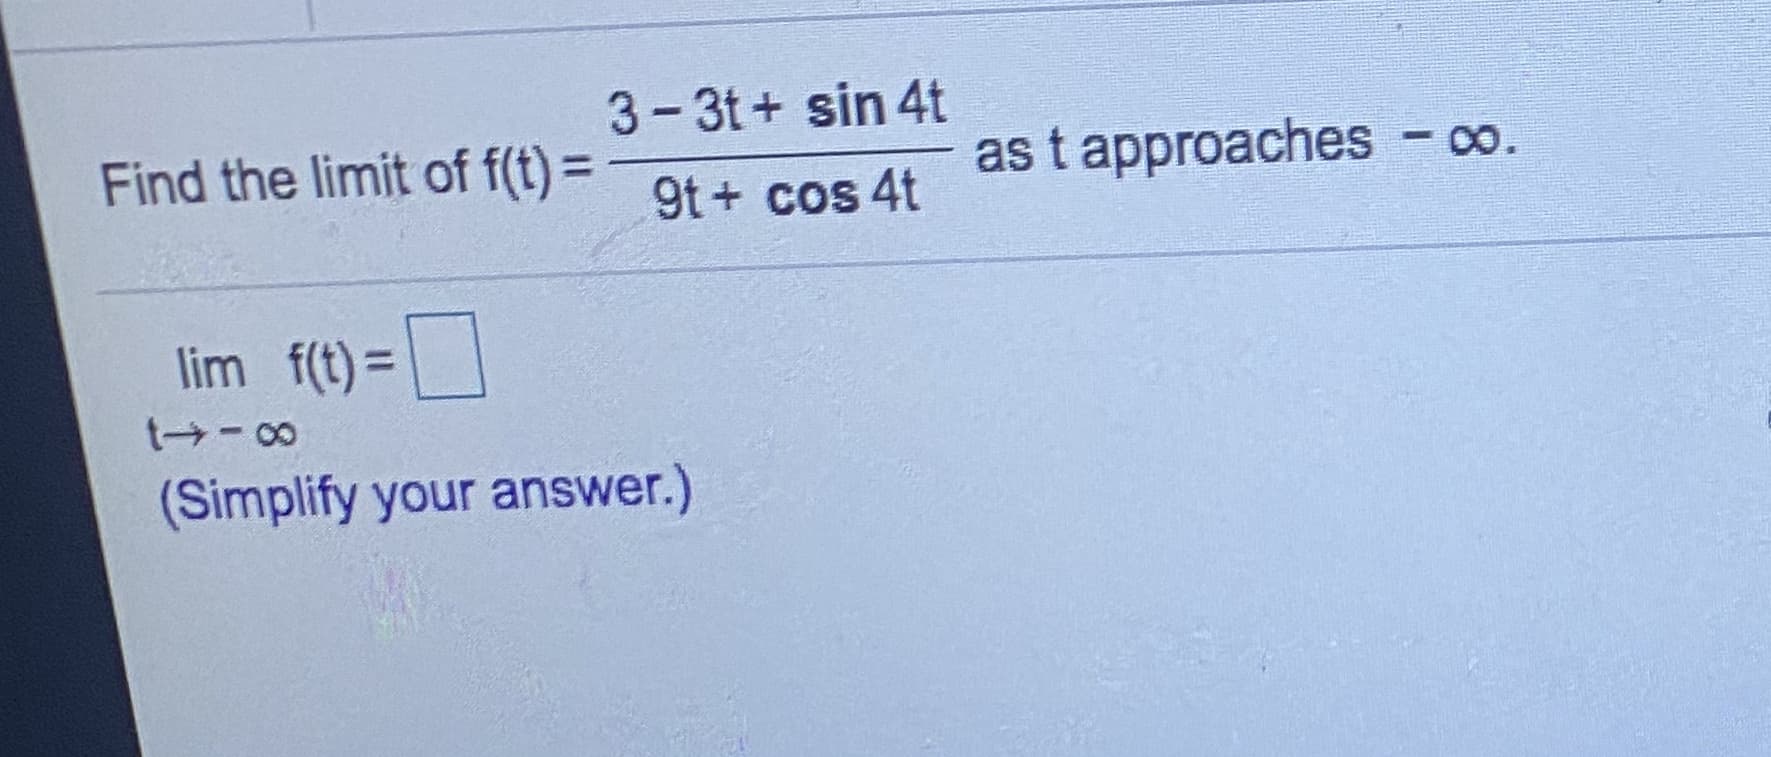 3-3t+ sin 4t
Find the limit of f(t)=9t+ cos 4t
as t approaches - o.
